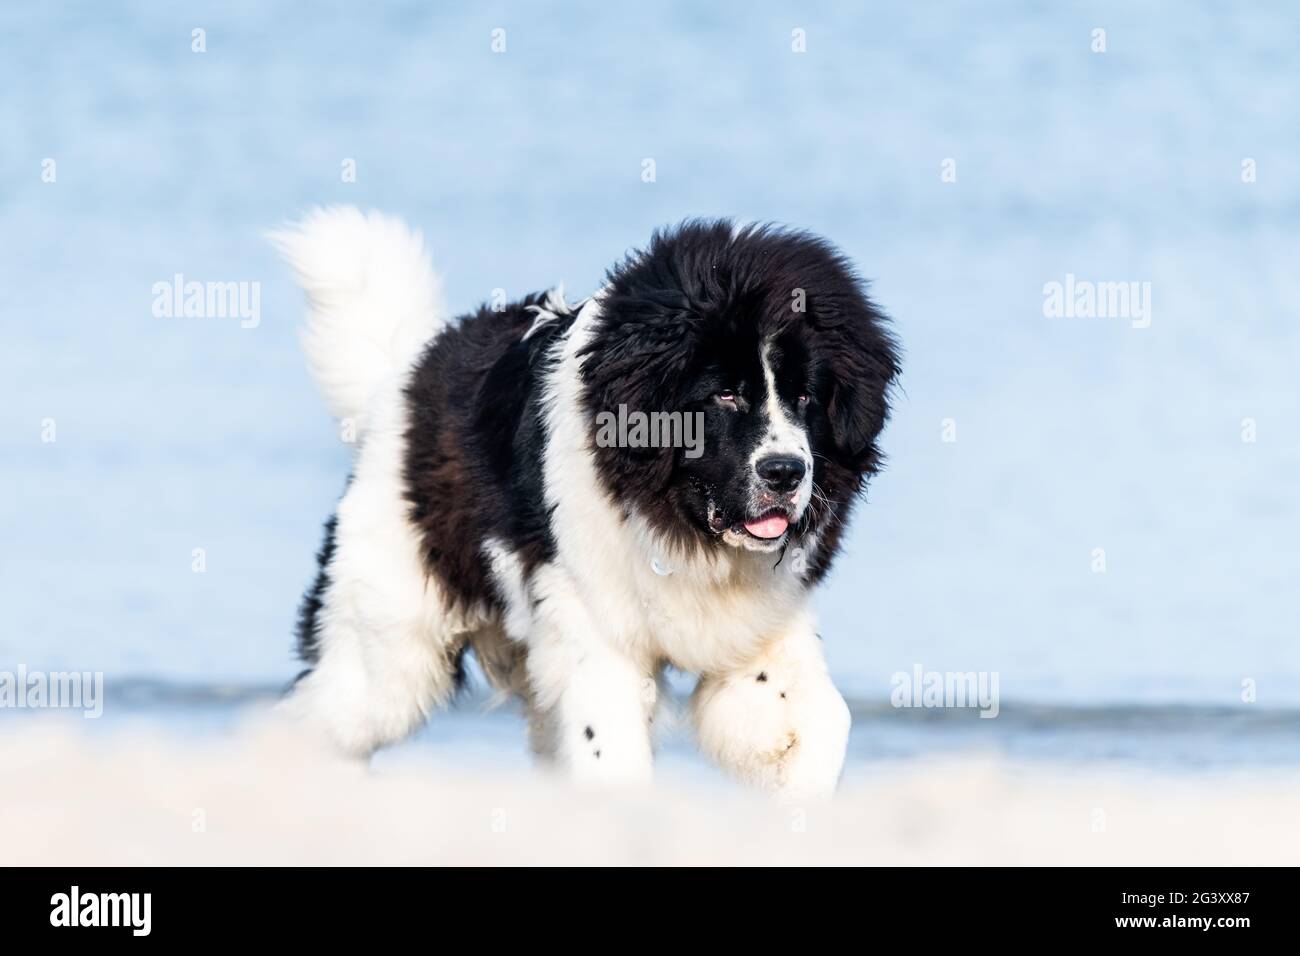 Junger Neufundländer Hund am Ostseestrand, Ostsee, Heiligenhafen, Hund,  Ostholstein, Deutschland Stockfotografie - Alamy